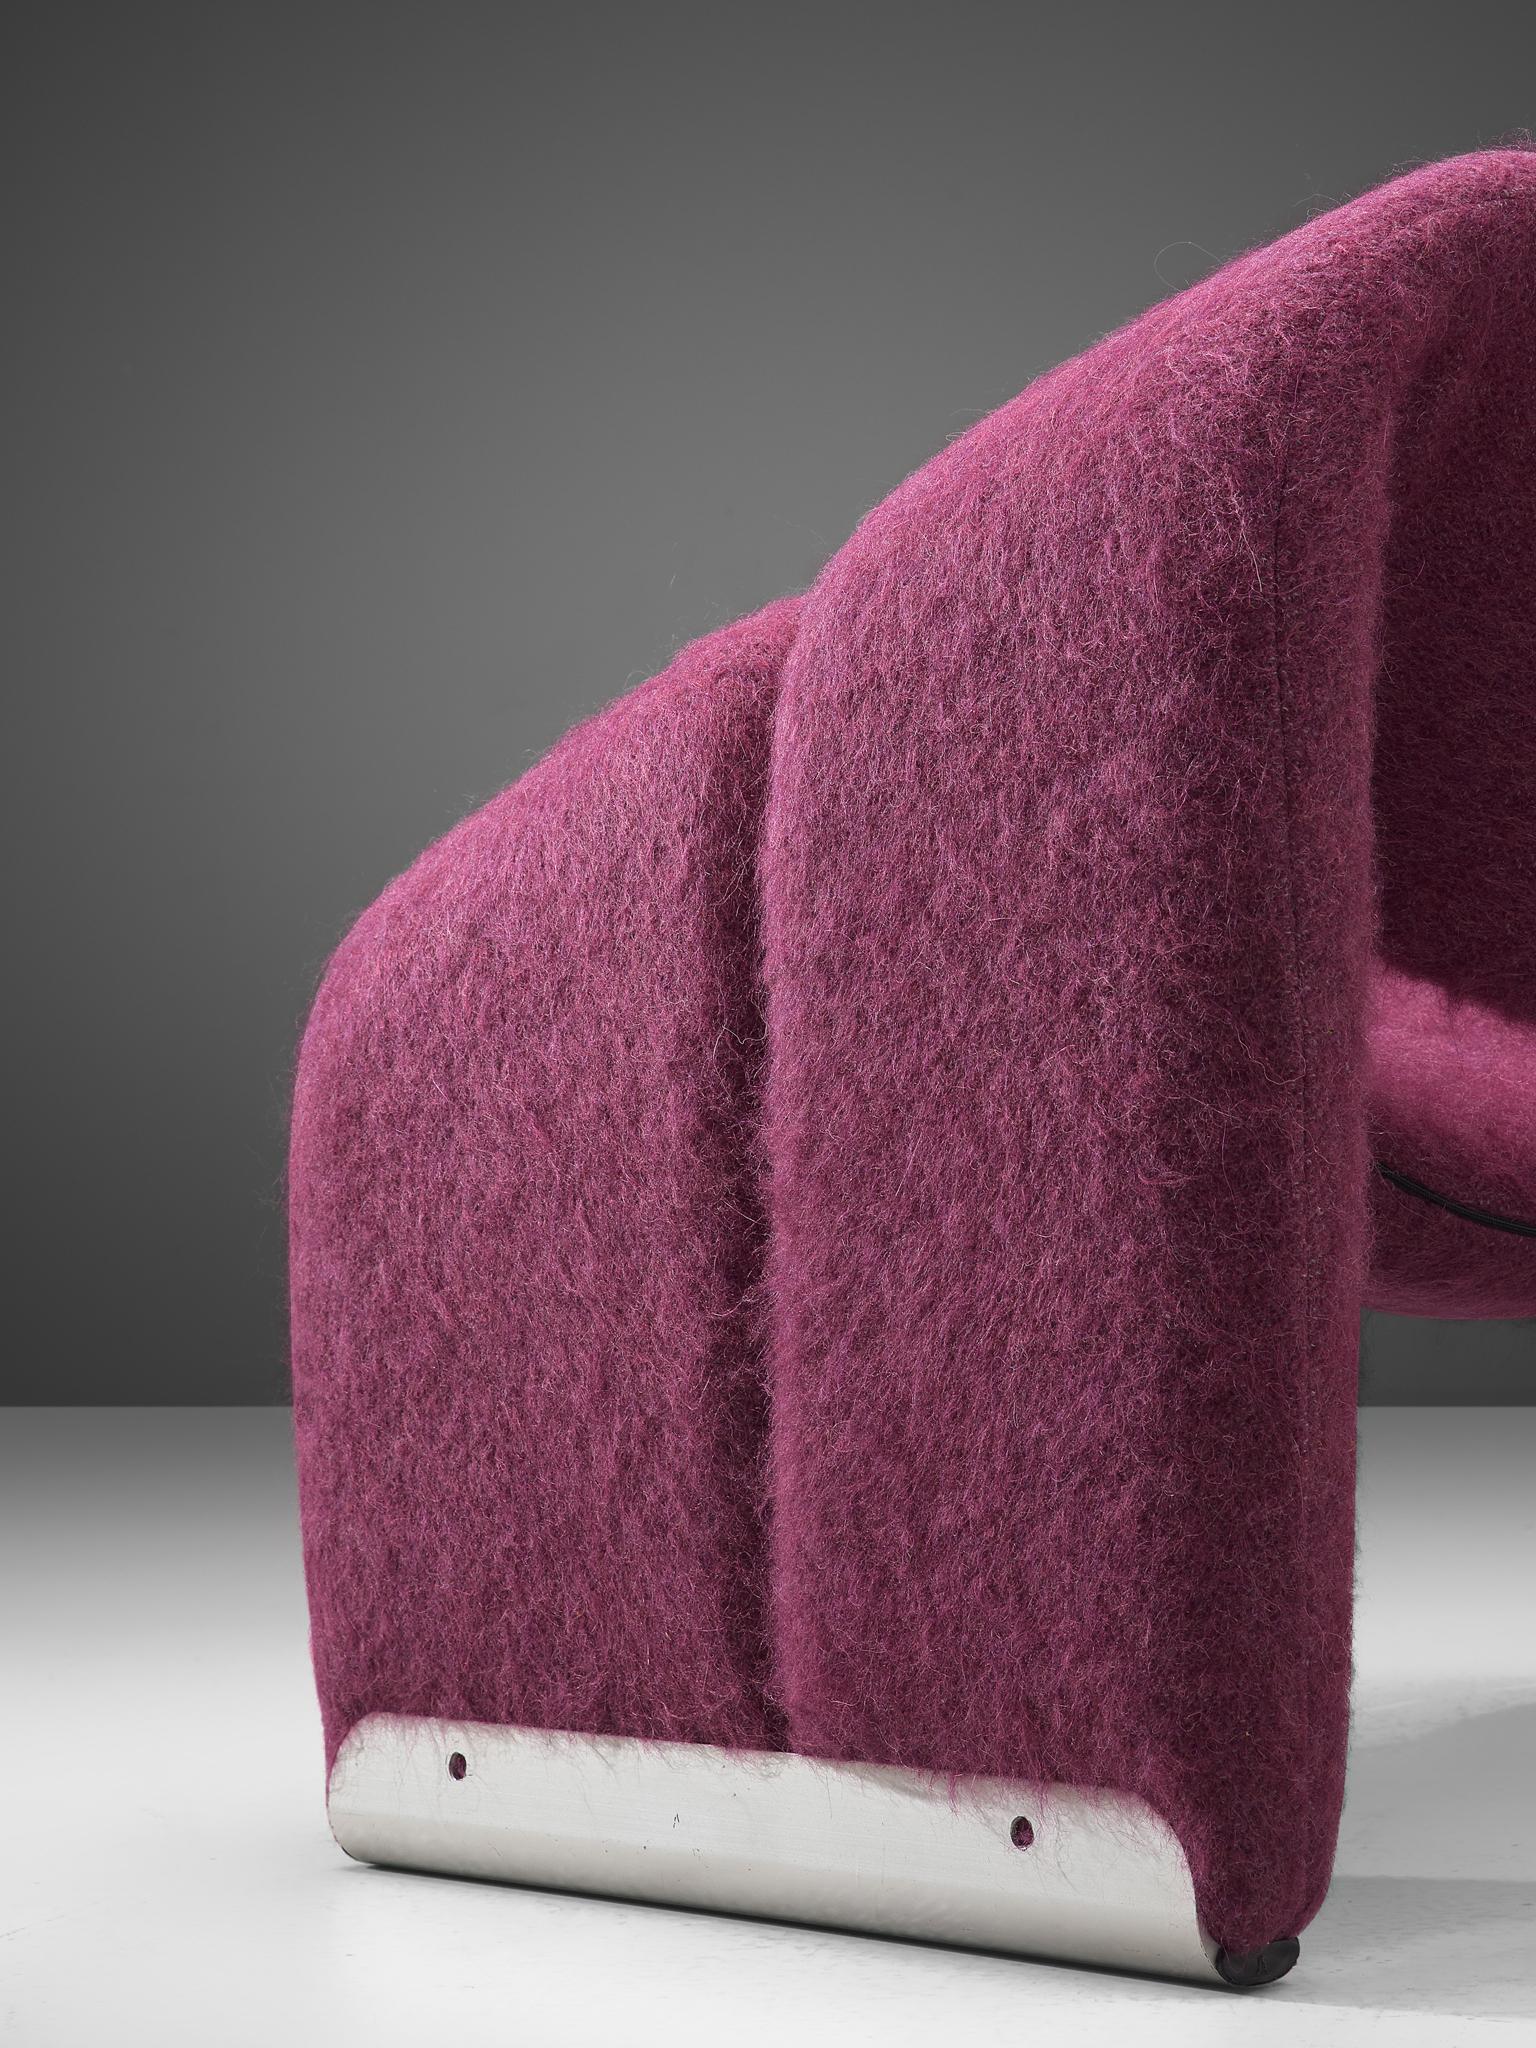 Dutch Pierre Paulin 'Groovy' Lounge Chair Customizable in Pierre Frey Wool Upholstery